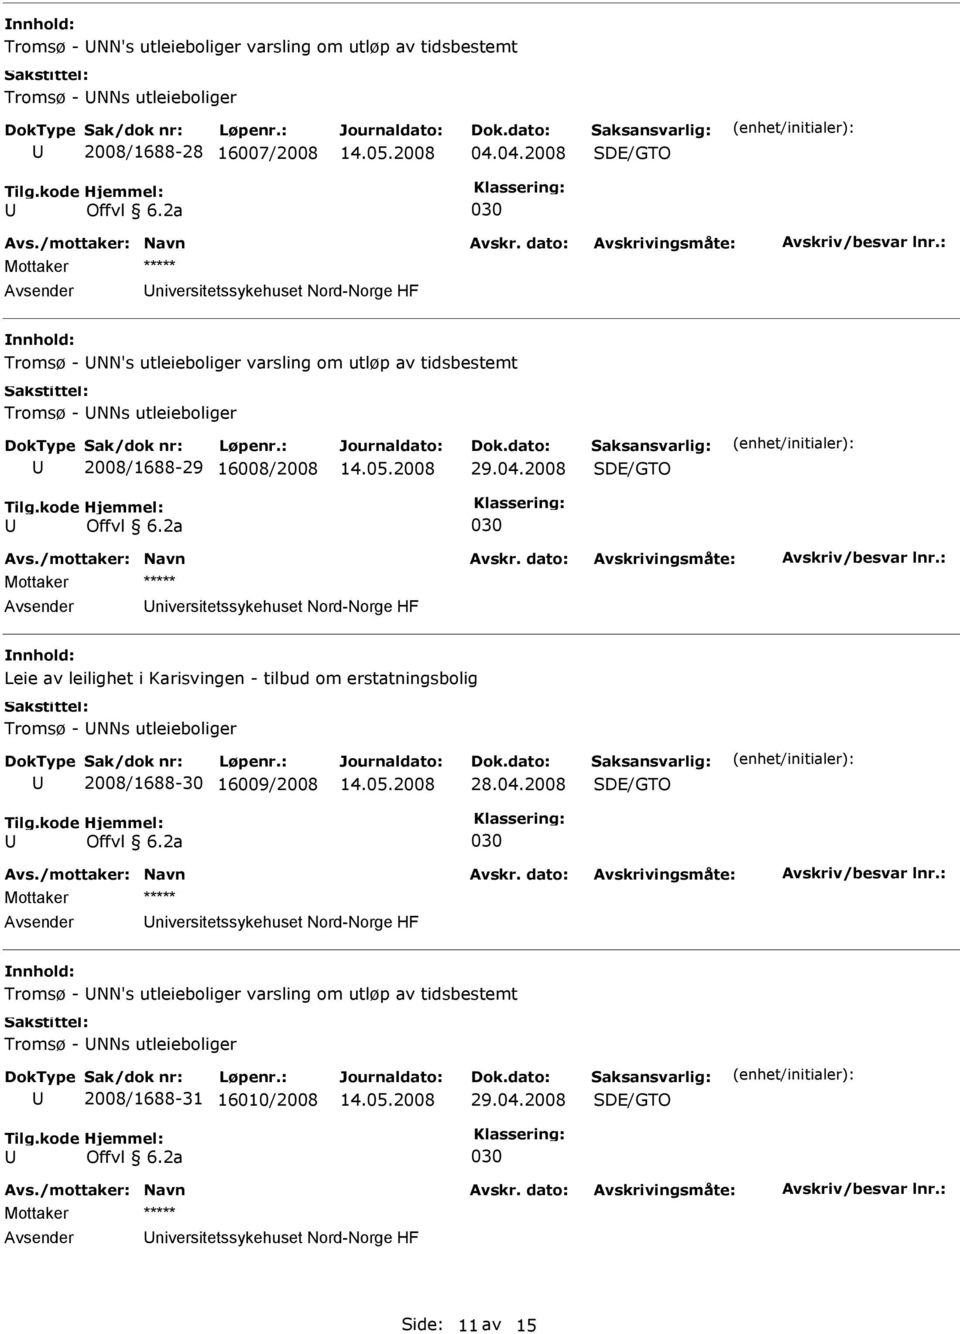 16008/2008 niversitetssykehuset Nord-Norge HF Leie av leilighet i Karisvingen - tilbud om erstatningsbolig Tromsø - NNs utleieboliger 2008/1688-30